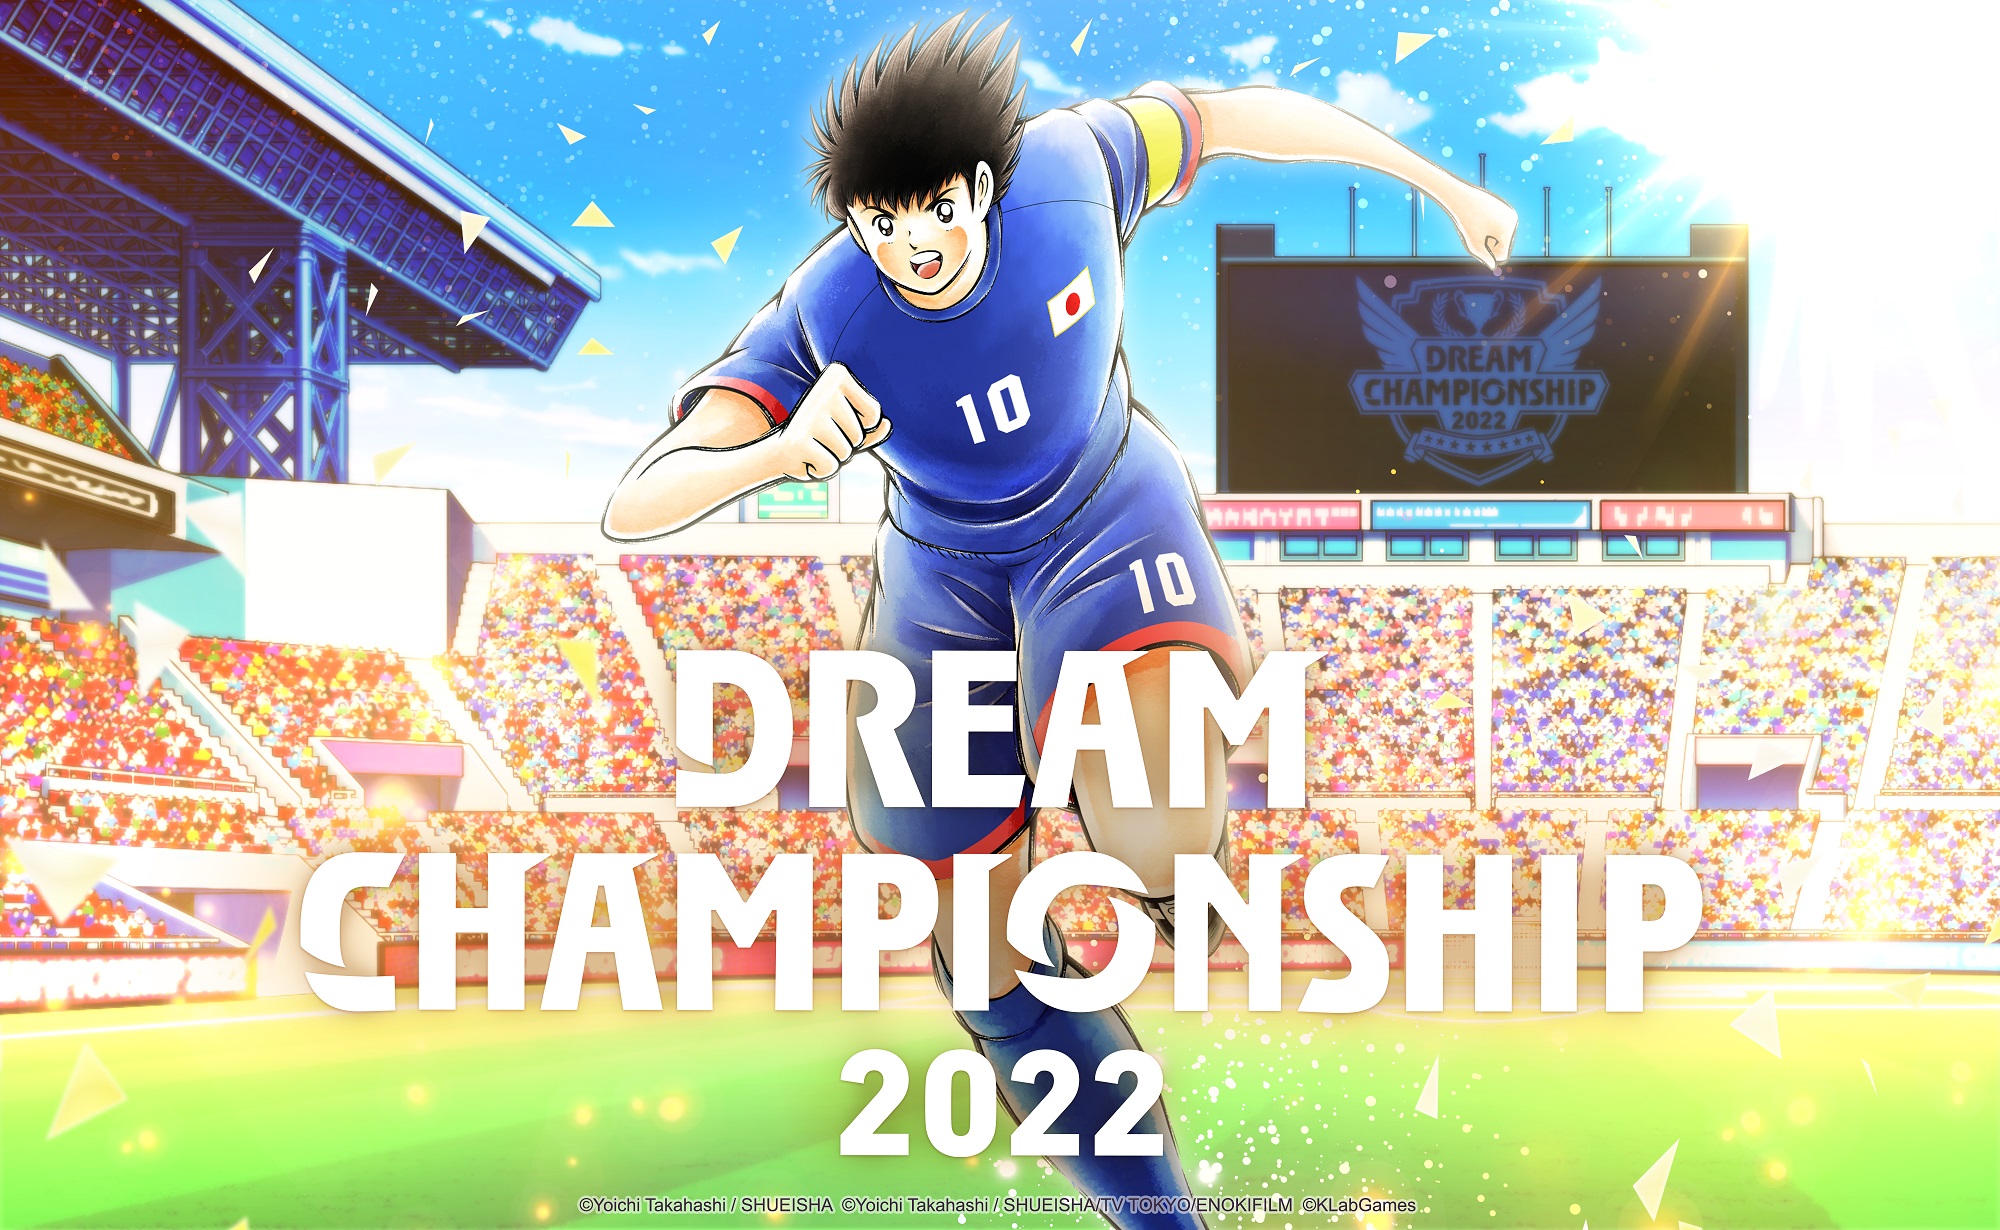 انطلاق تصفيات الانترنت لبطولة Dream Championship 2022 العالمية للعبة Captain Tsubasa: Dream Team الجمعة ...